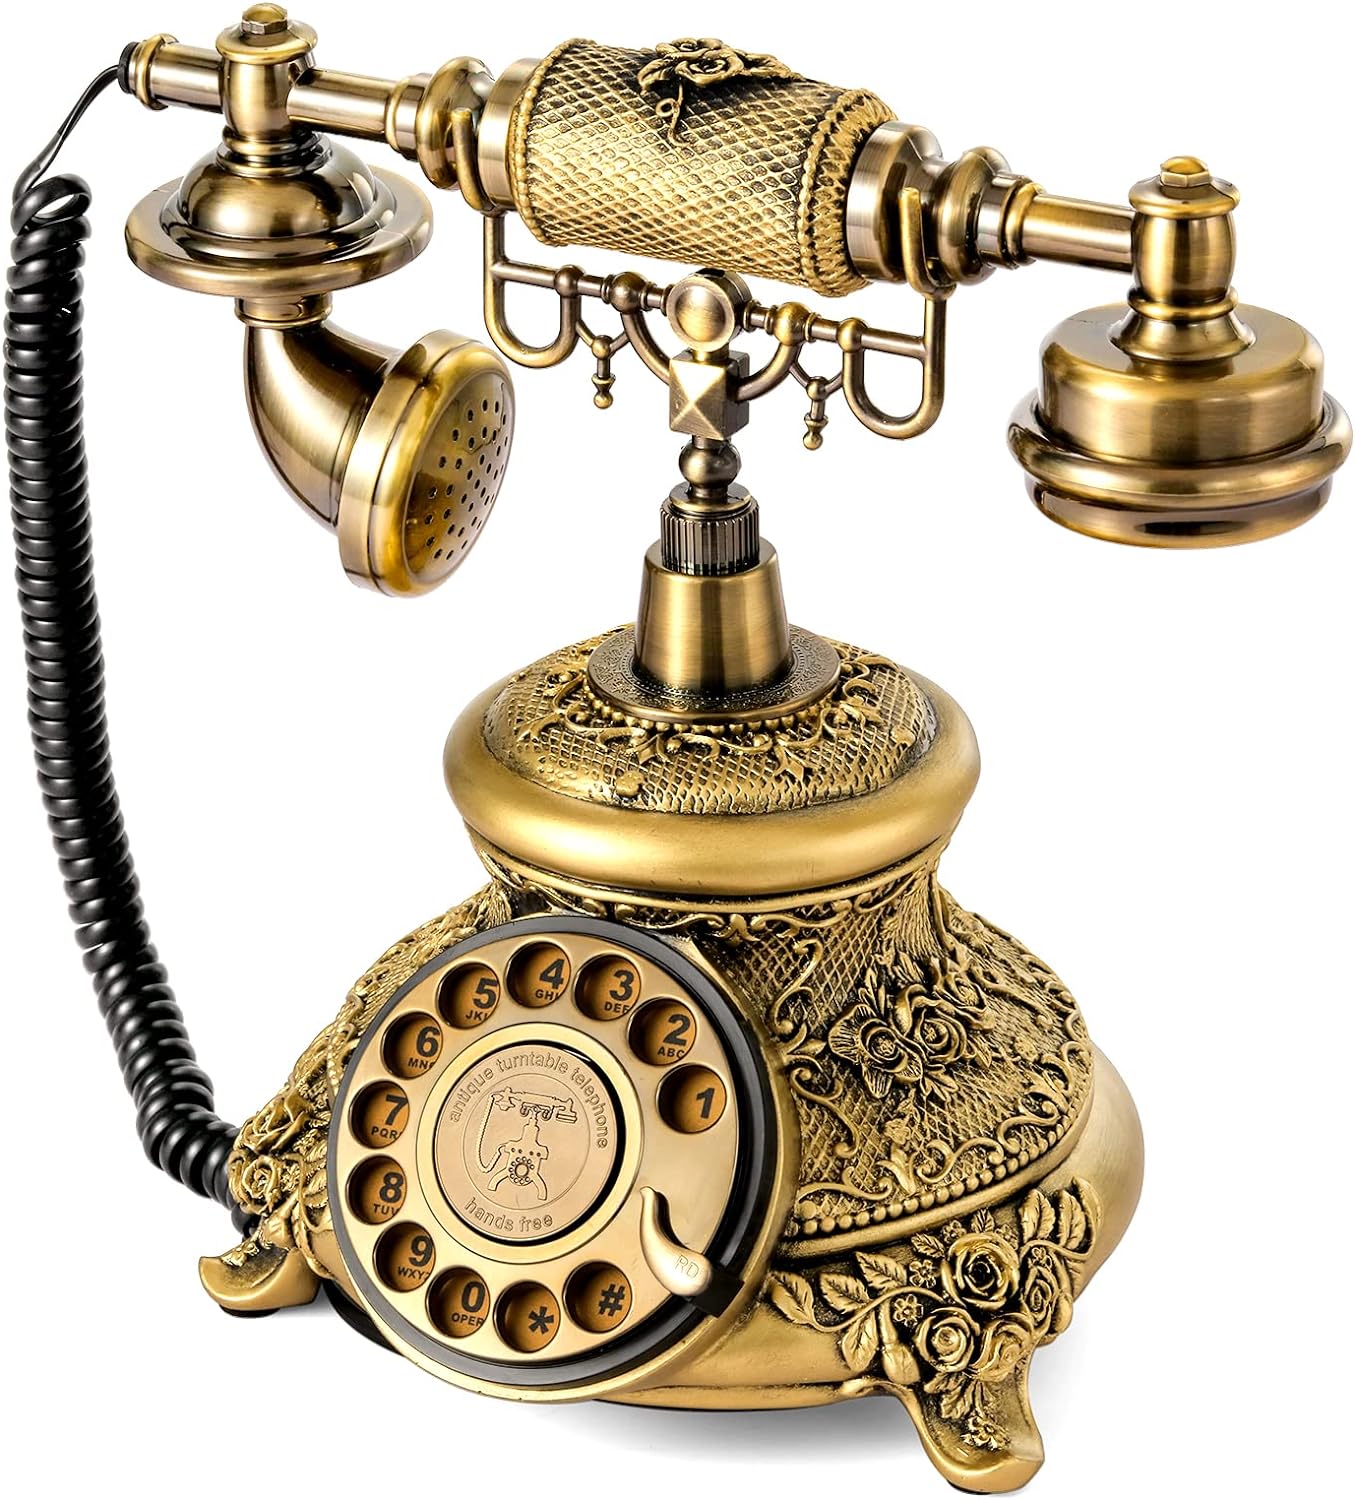 Teléfono vintage, teléfono rotativo retro, teléfono fijo, teléfono